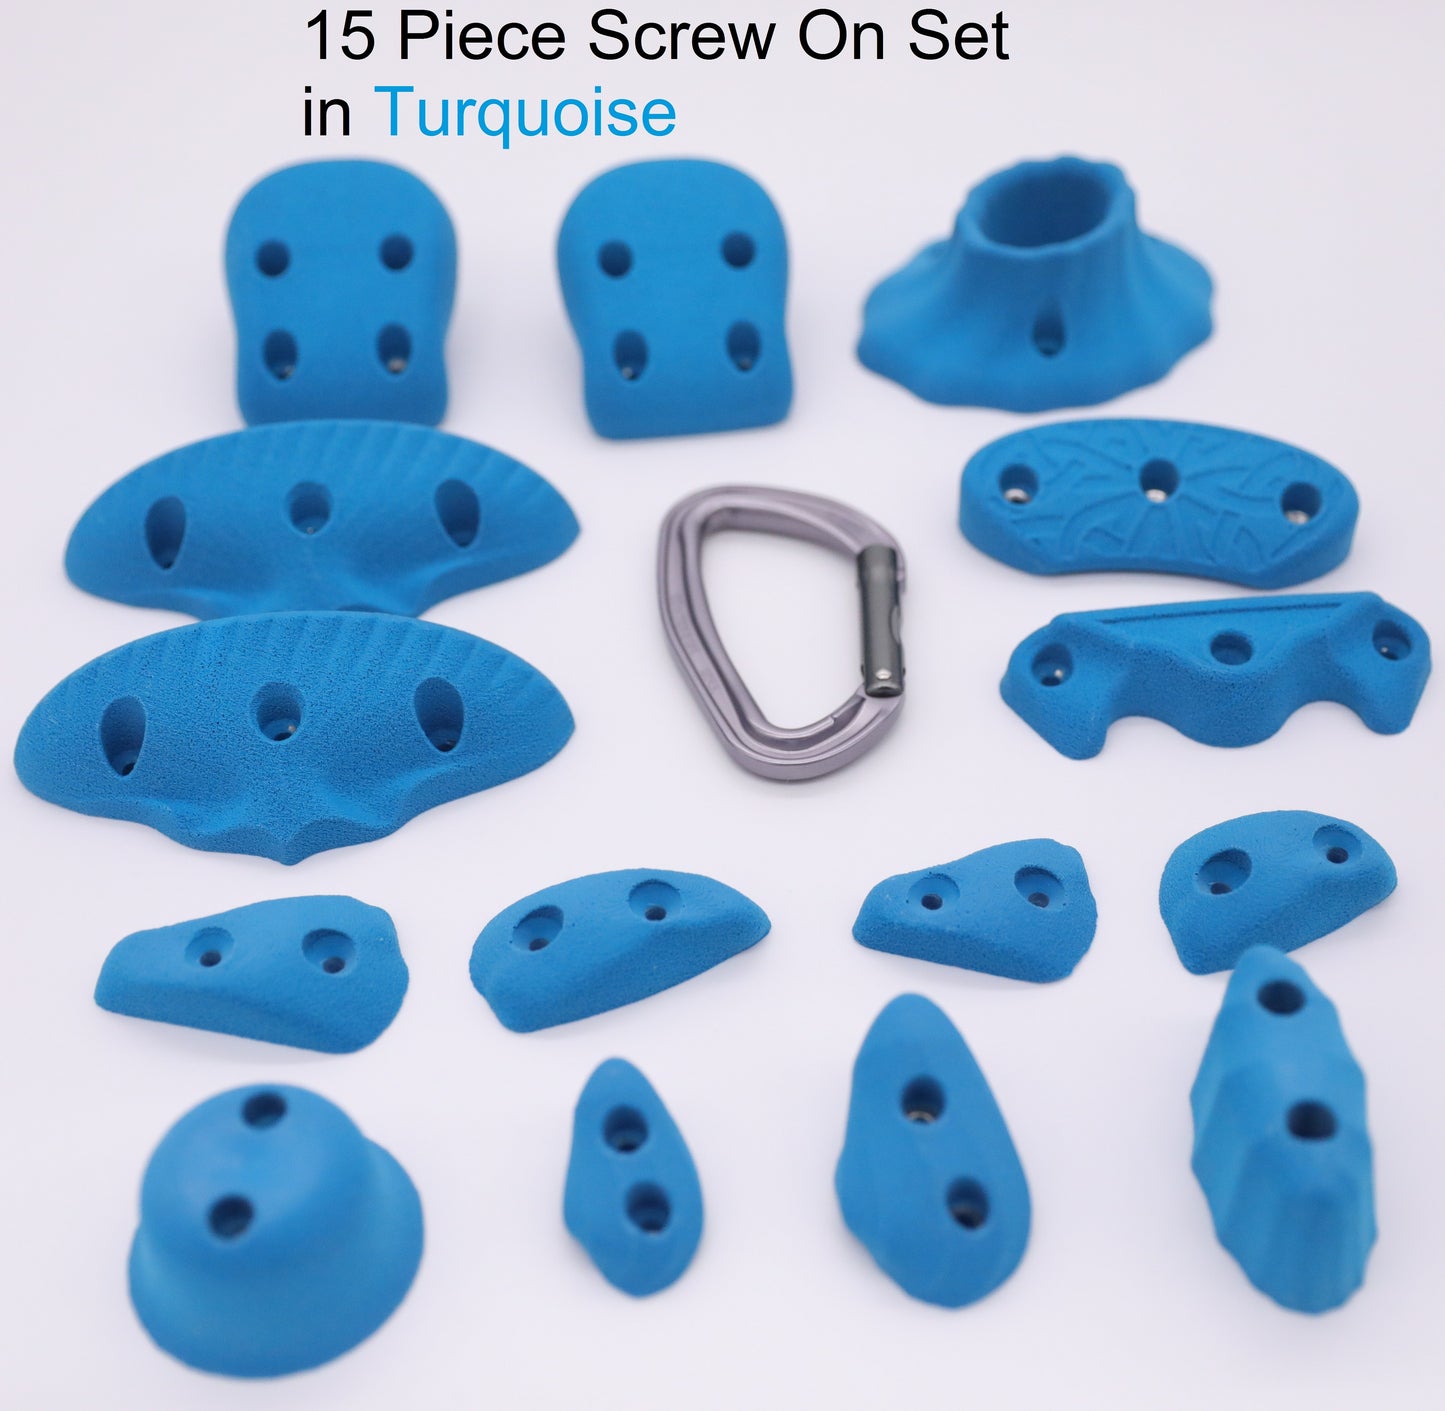 15 Piece Screw On Climbing Hold Set